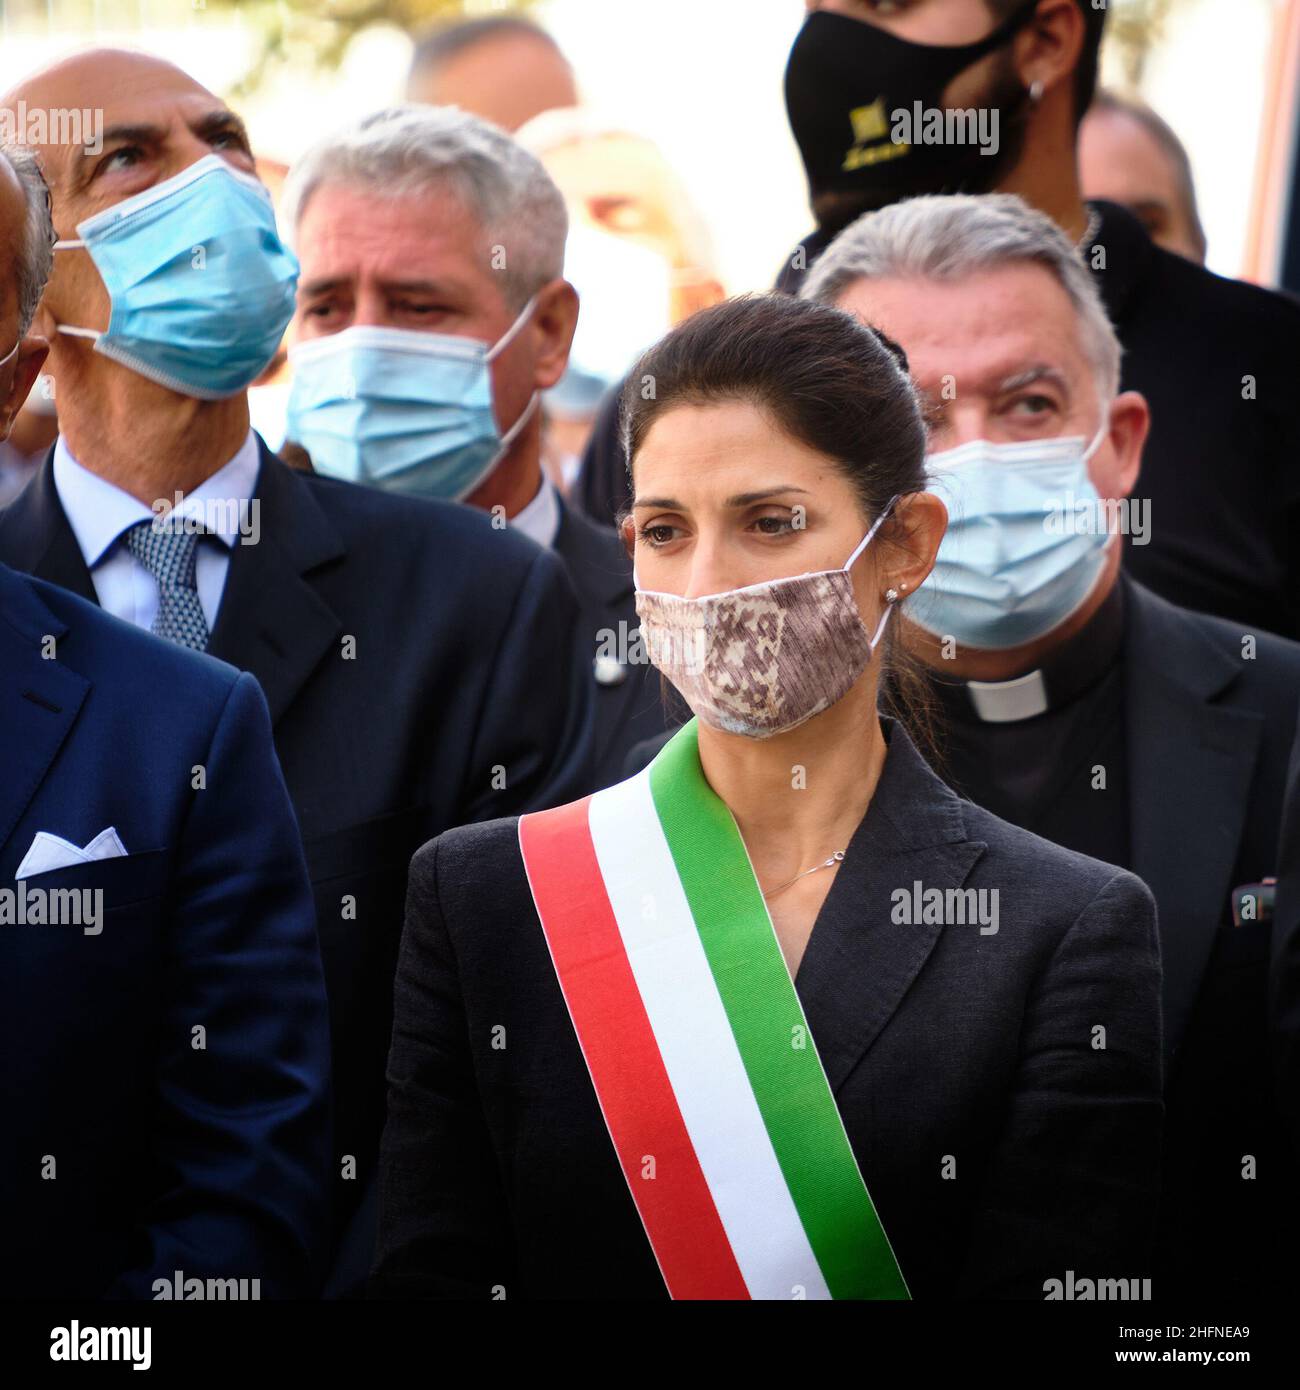 Mauro Scrobogna /Lapresse 01 septembre 2020 et#xA0; Rome, Italie Actualités inauguration de la salle d'urgence du campus bio-médical sur la photo : le maire de Rome, Virginia Raggi Banque D'Images